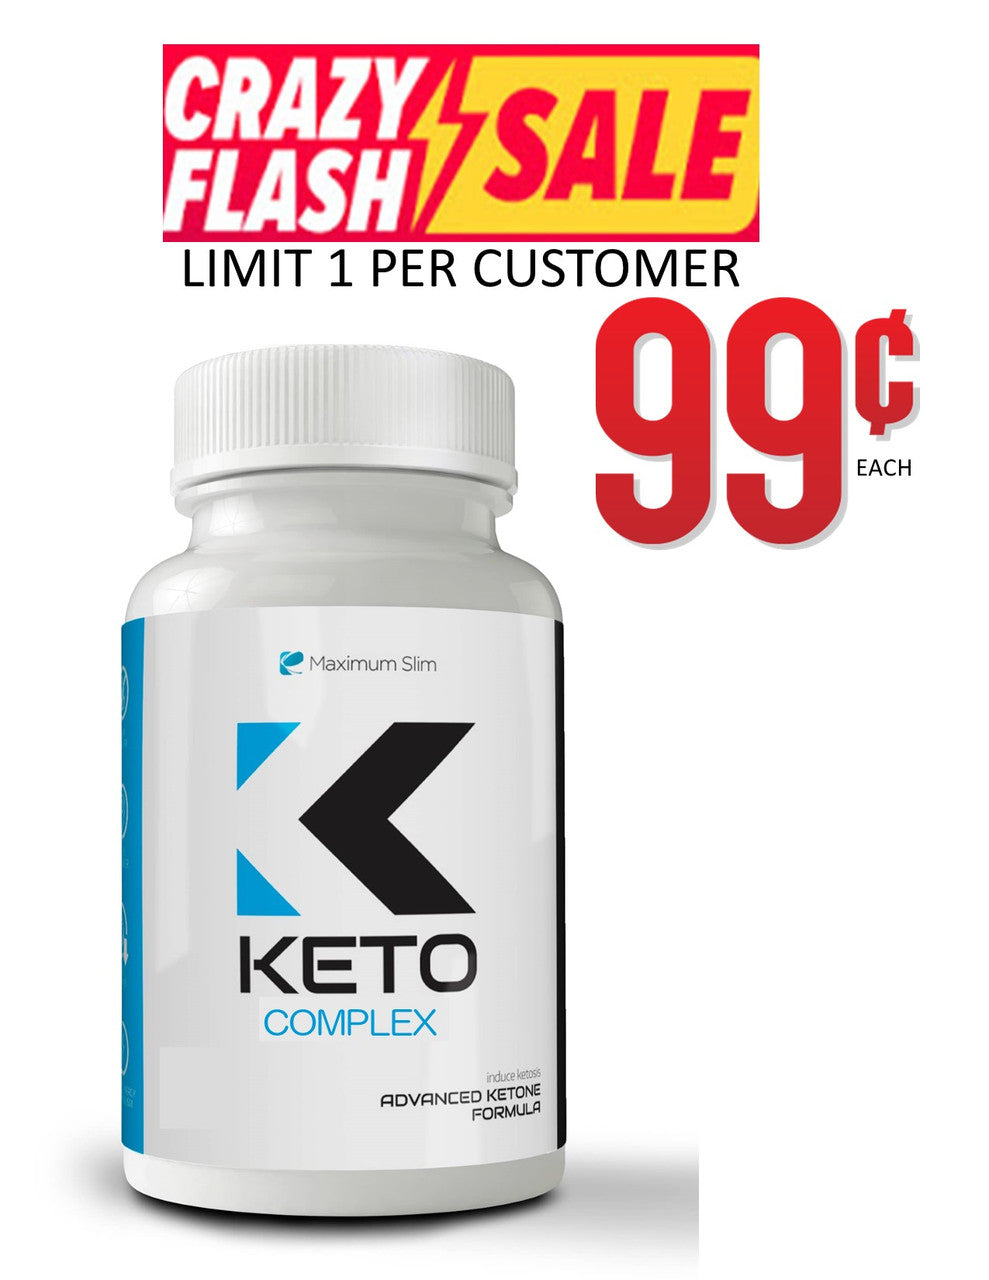 Keto Complex Flash Sale